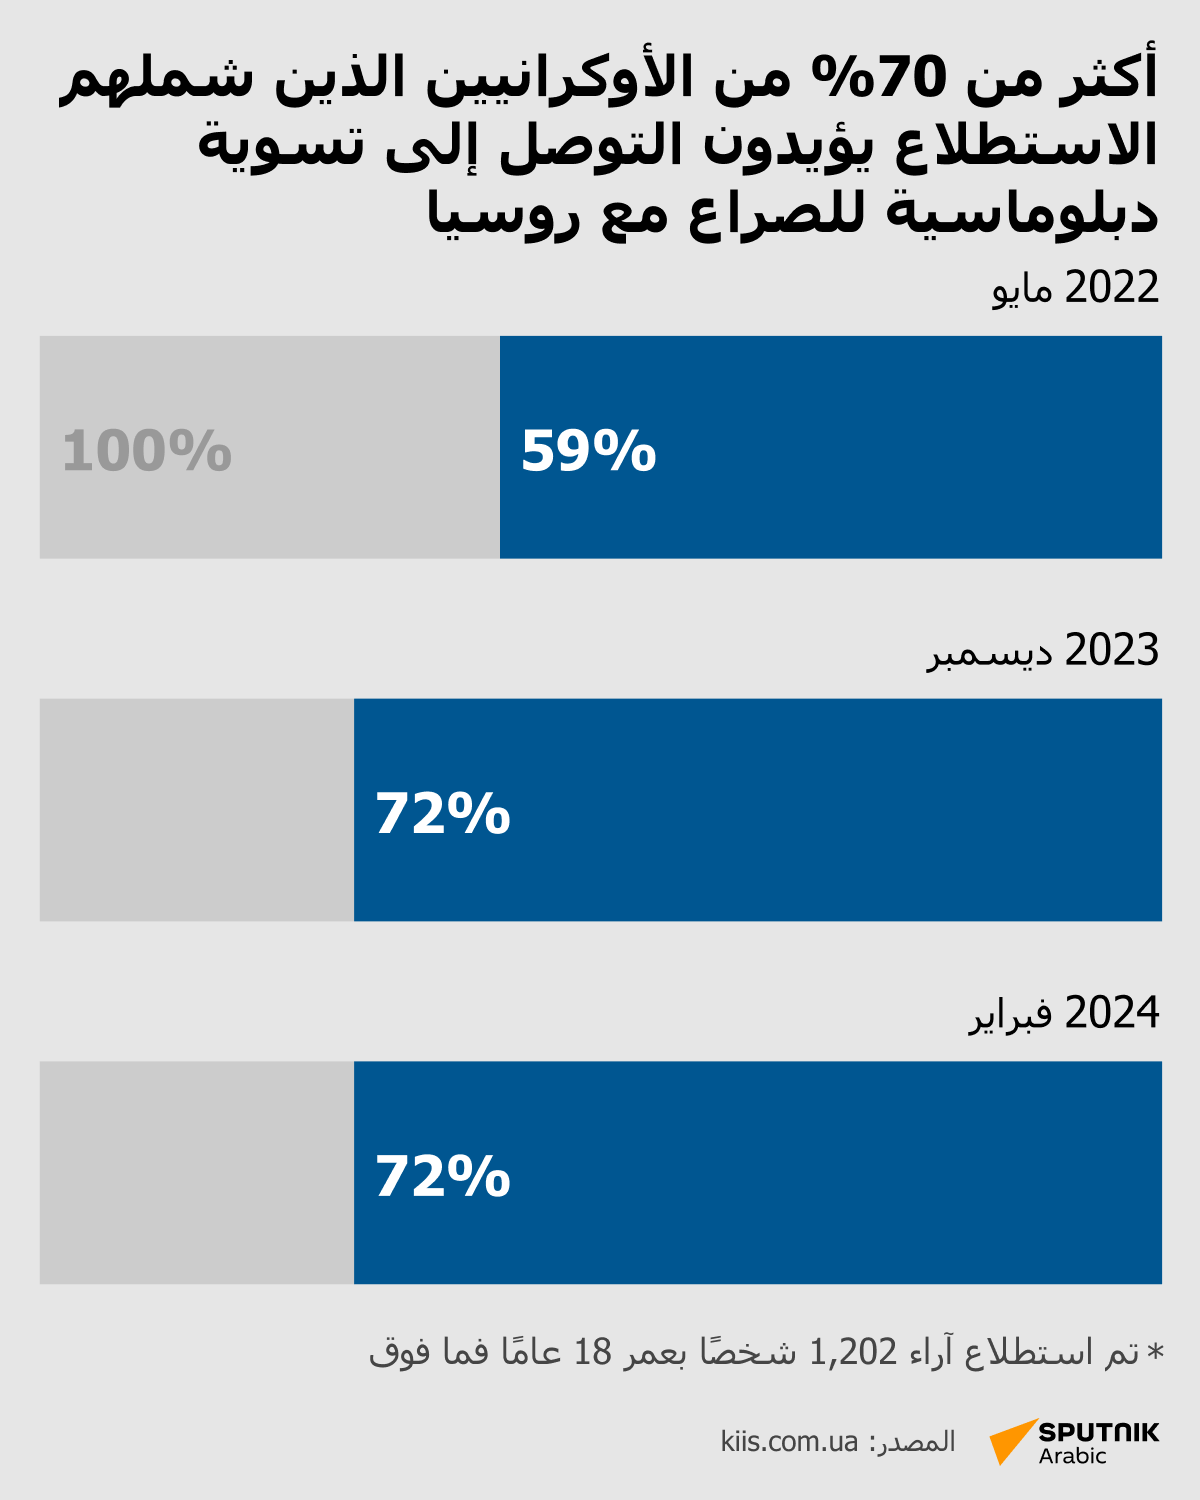 أكثر من 70% من الأوكرانيين الذين شملهم الاستطلاع يؤيدون التوصل إلى تسوية دبلوماسية للصراع مع روسيا - سبوتنيك عربي